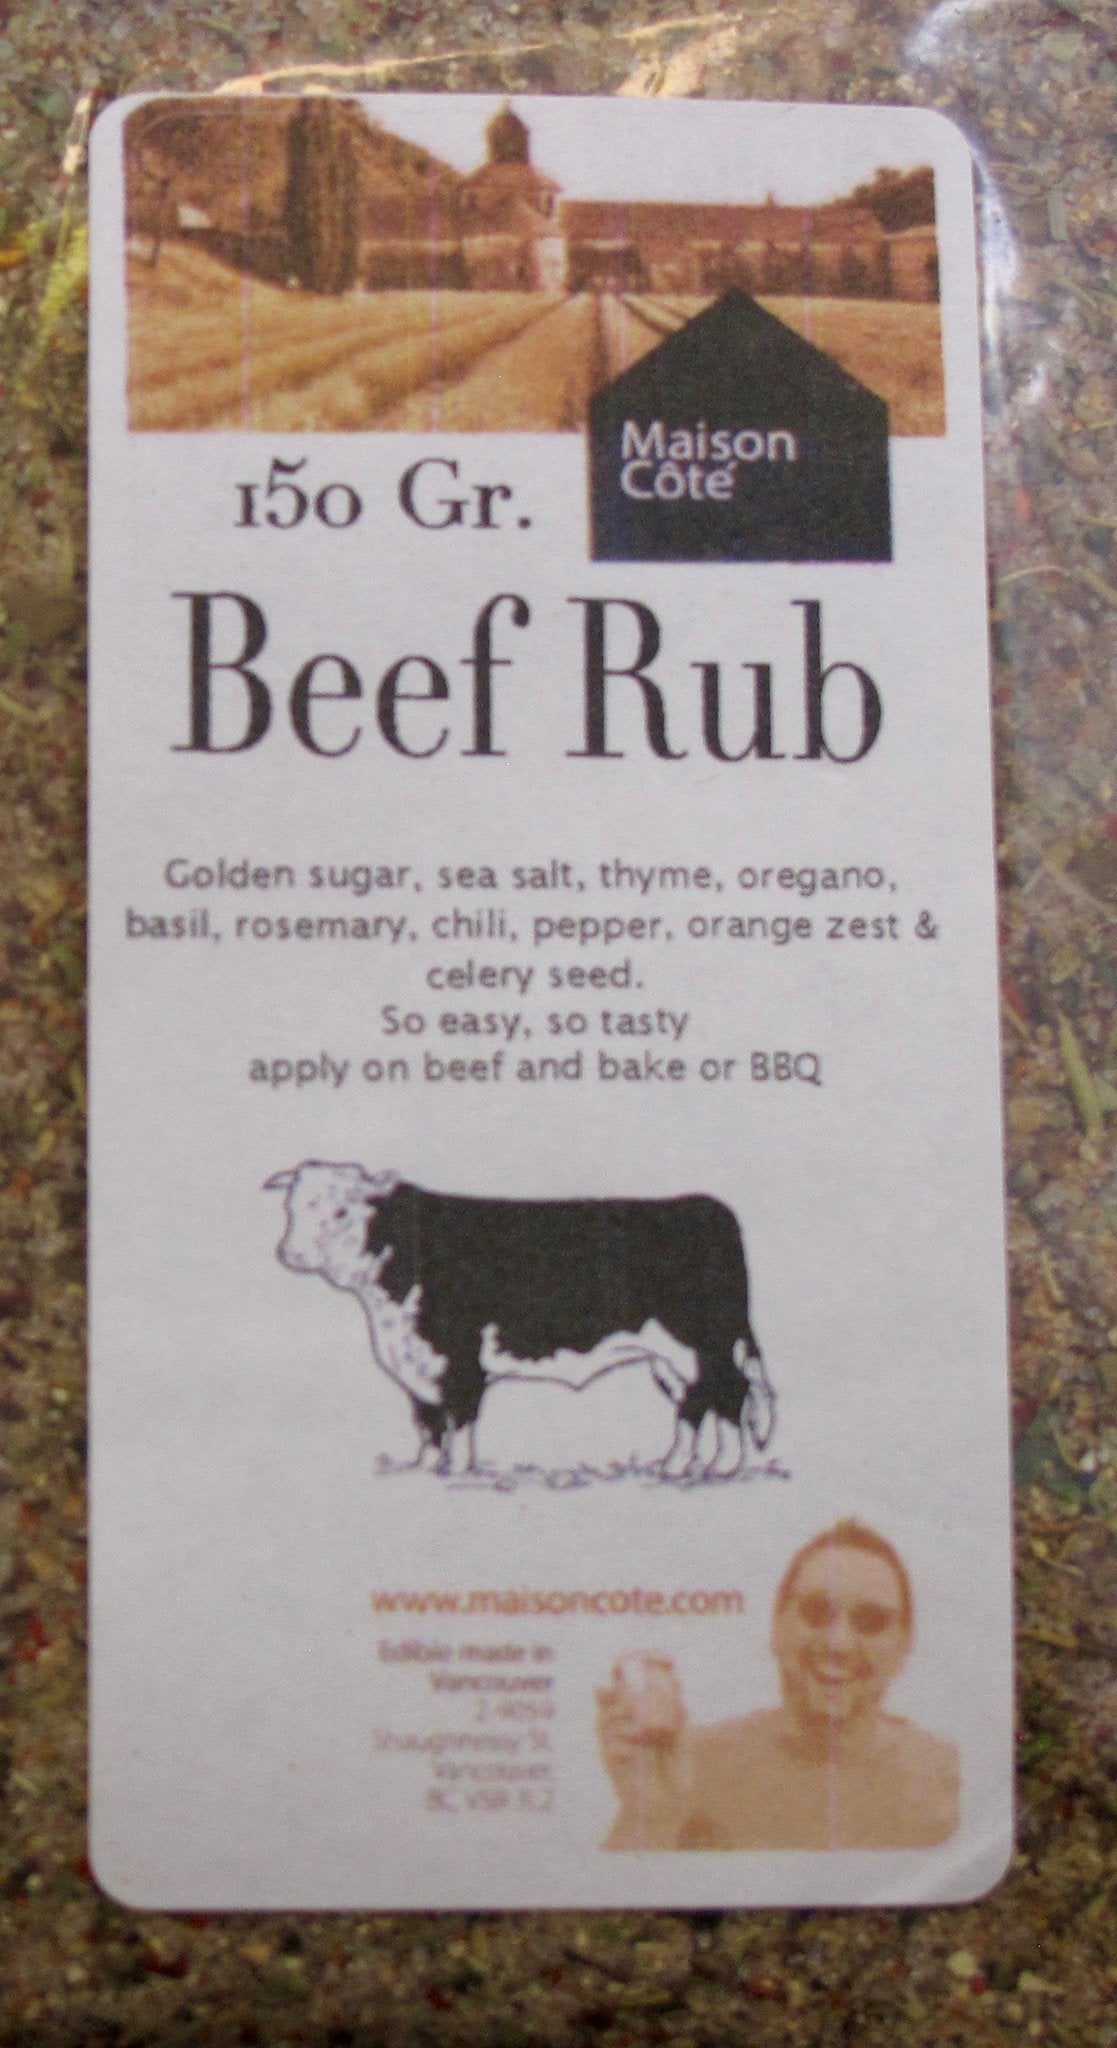 Beef Rub